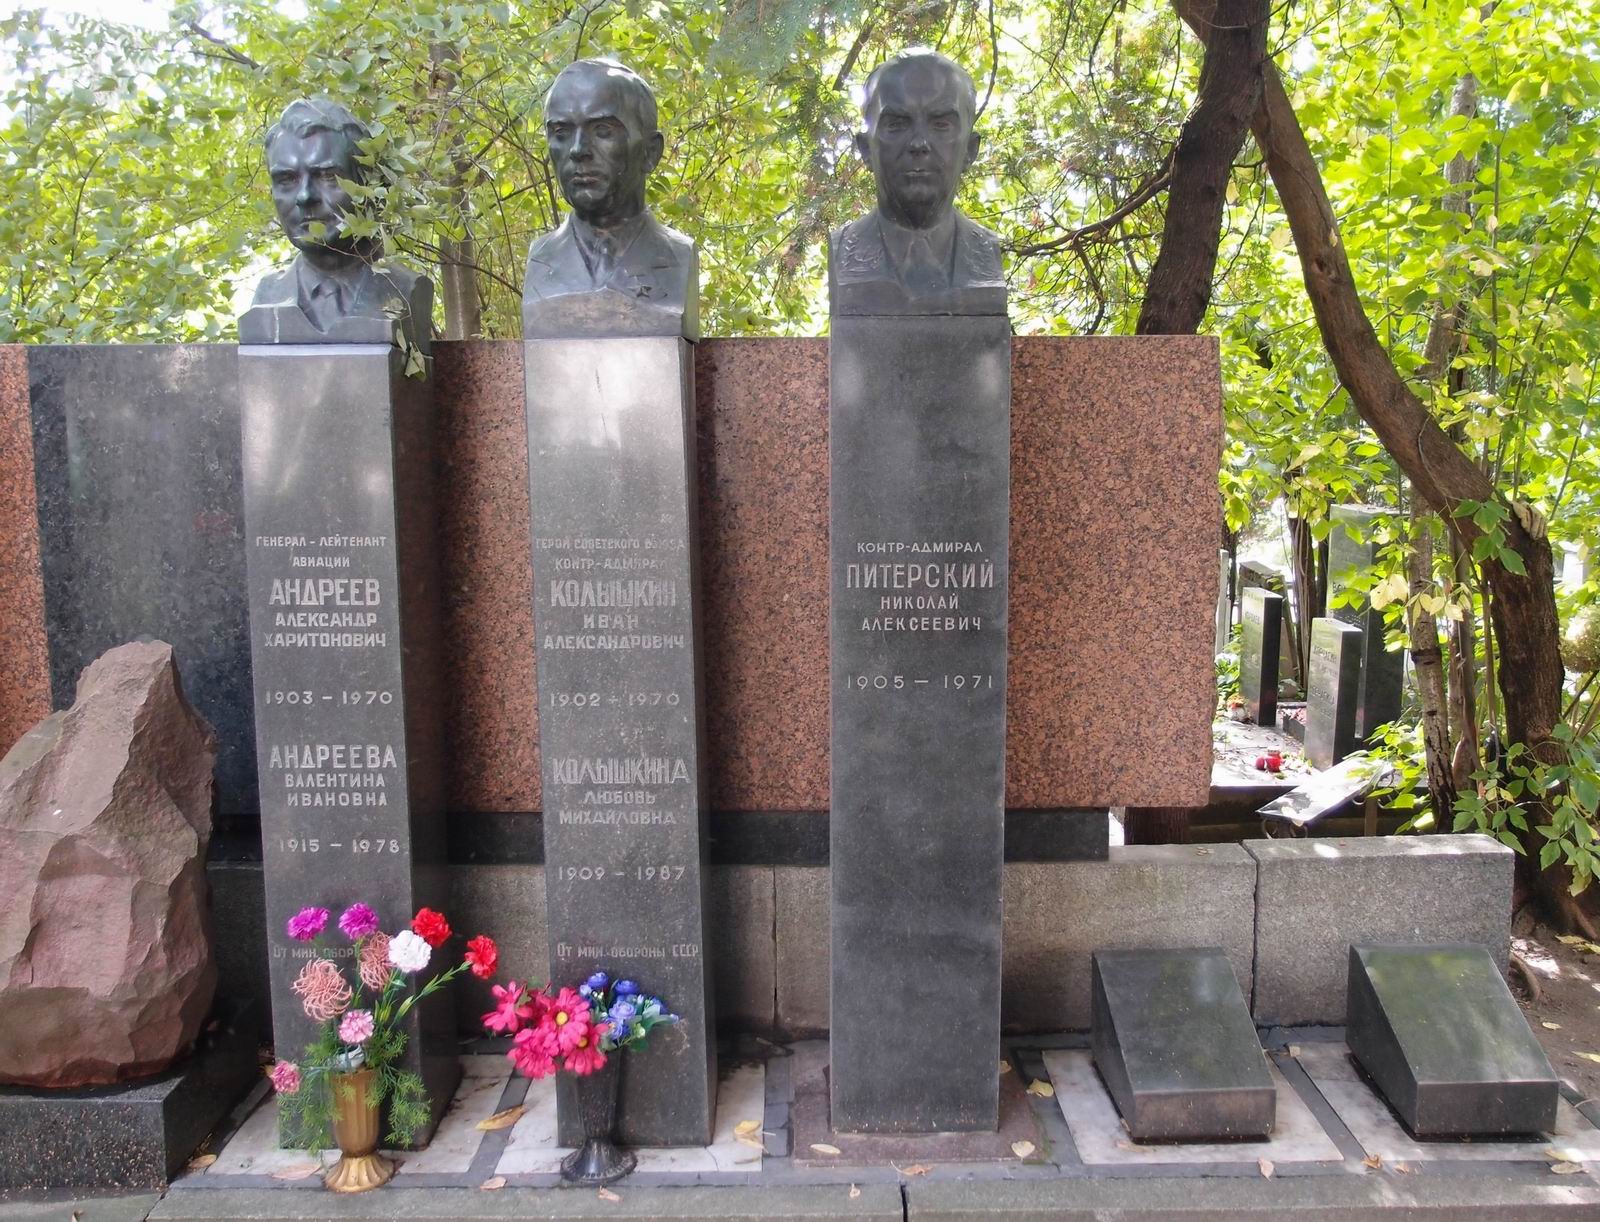 Памятник на могиле Питерского Н.А. (1905-1971), ск. А.Елецкий, арх. П.Ботвинников, на Новодевичьем кладбище (1-43-4). Нажмите левую кнопку мыши чтобы увидеть комплекс полностью.